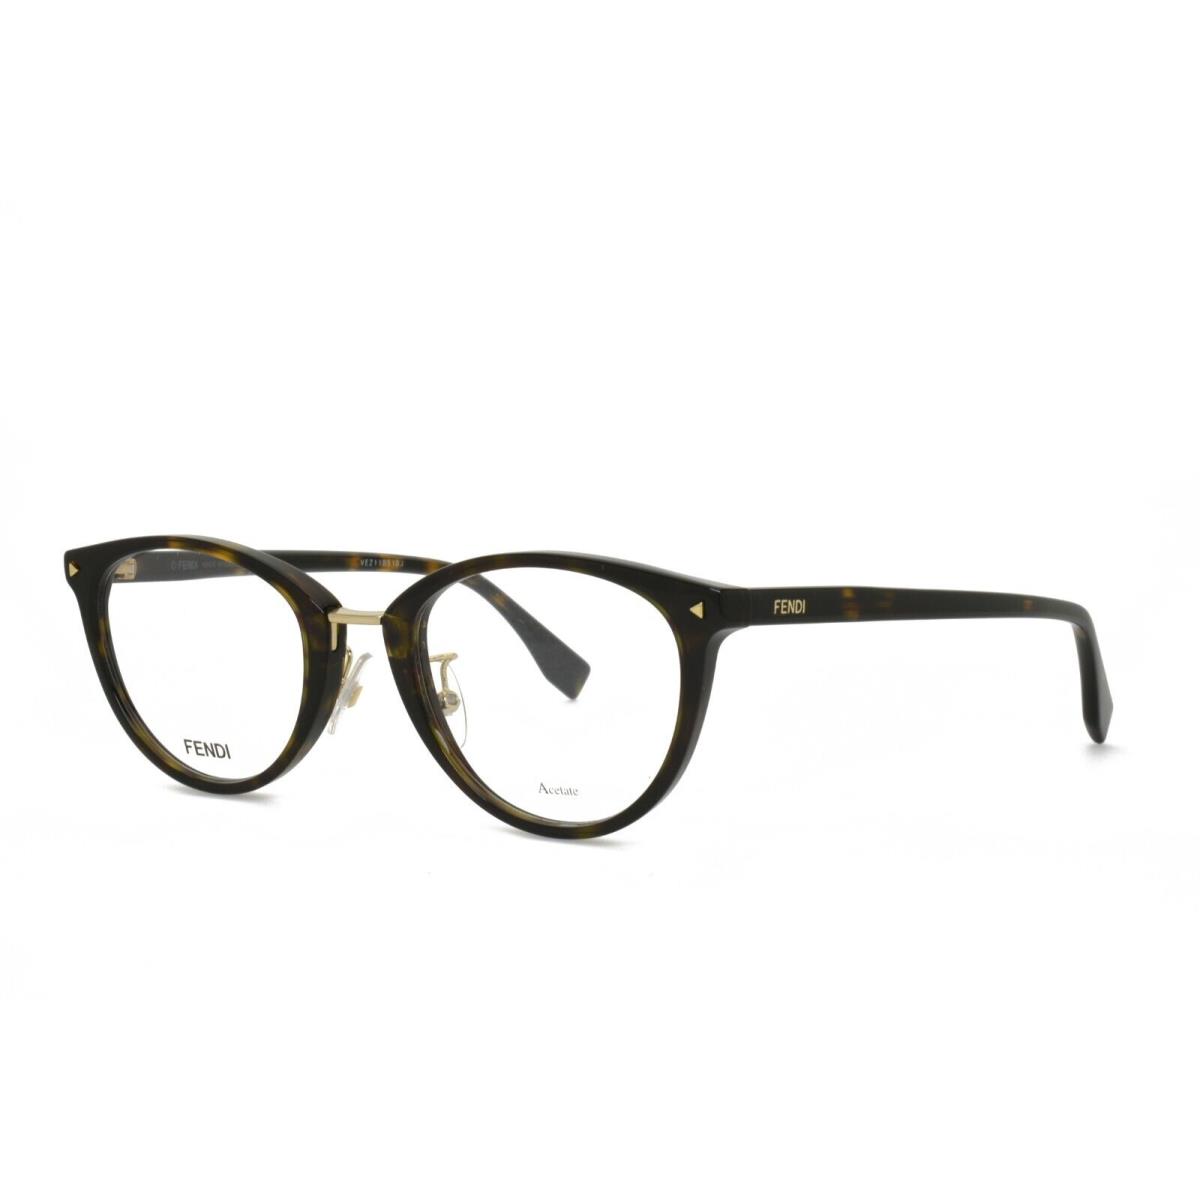 Fendi 0367G 086 50-22-140 Tortoise Eyeglasses Frames